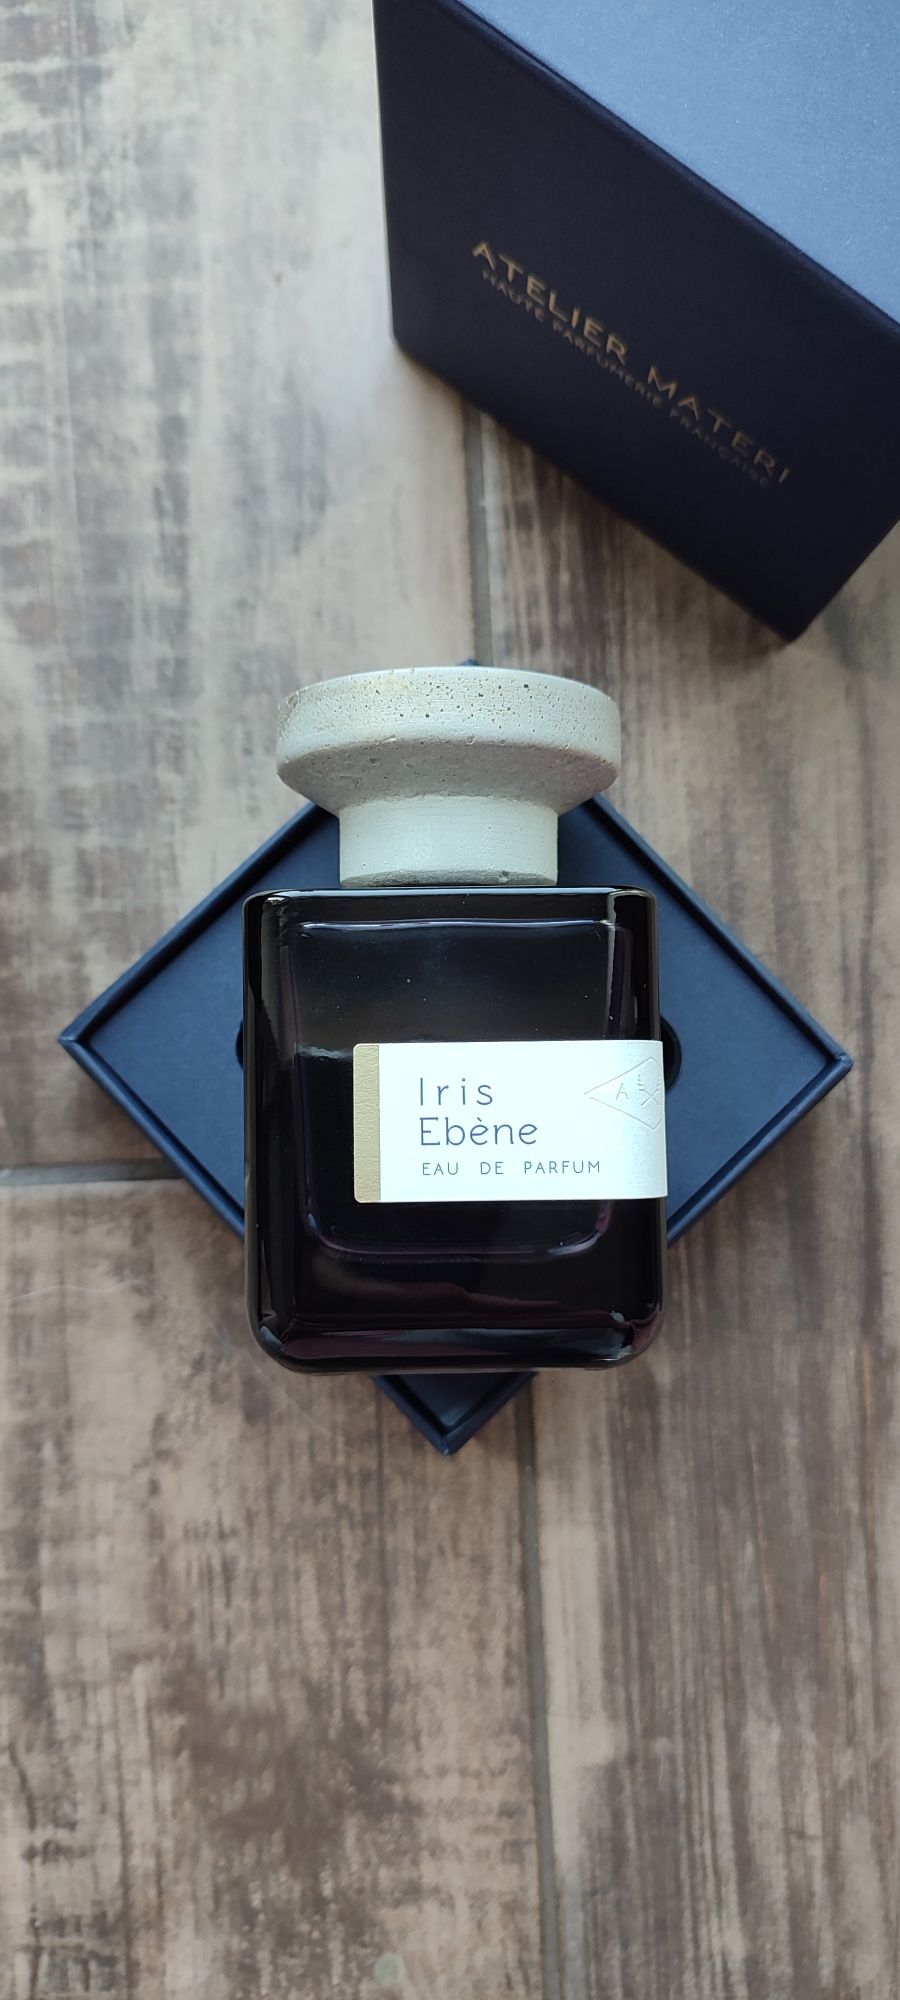 Sprzedam perfumy niszowe - Atelier Materi Iris Ebene 100 ml